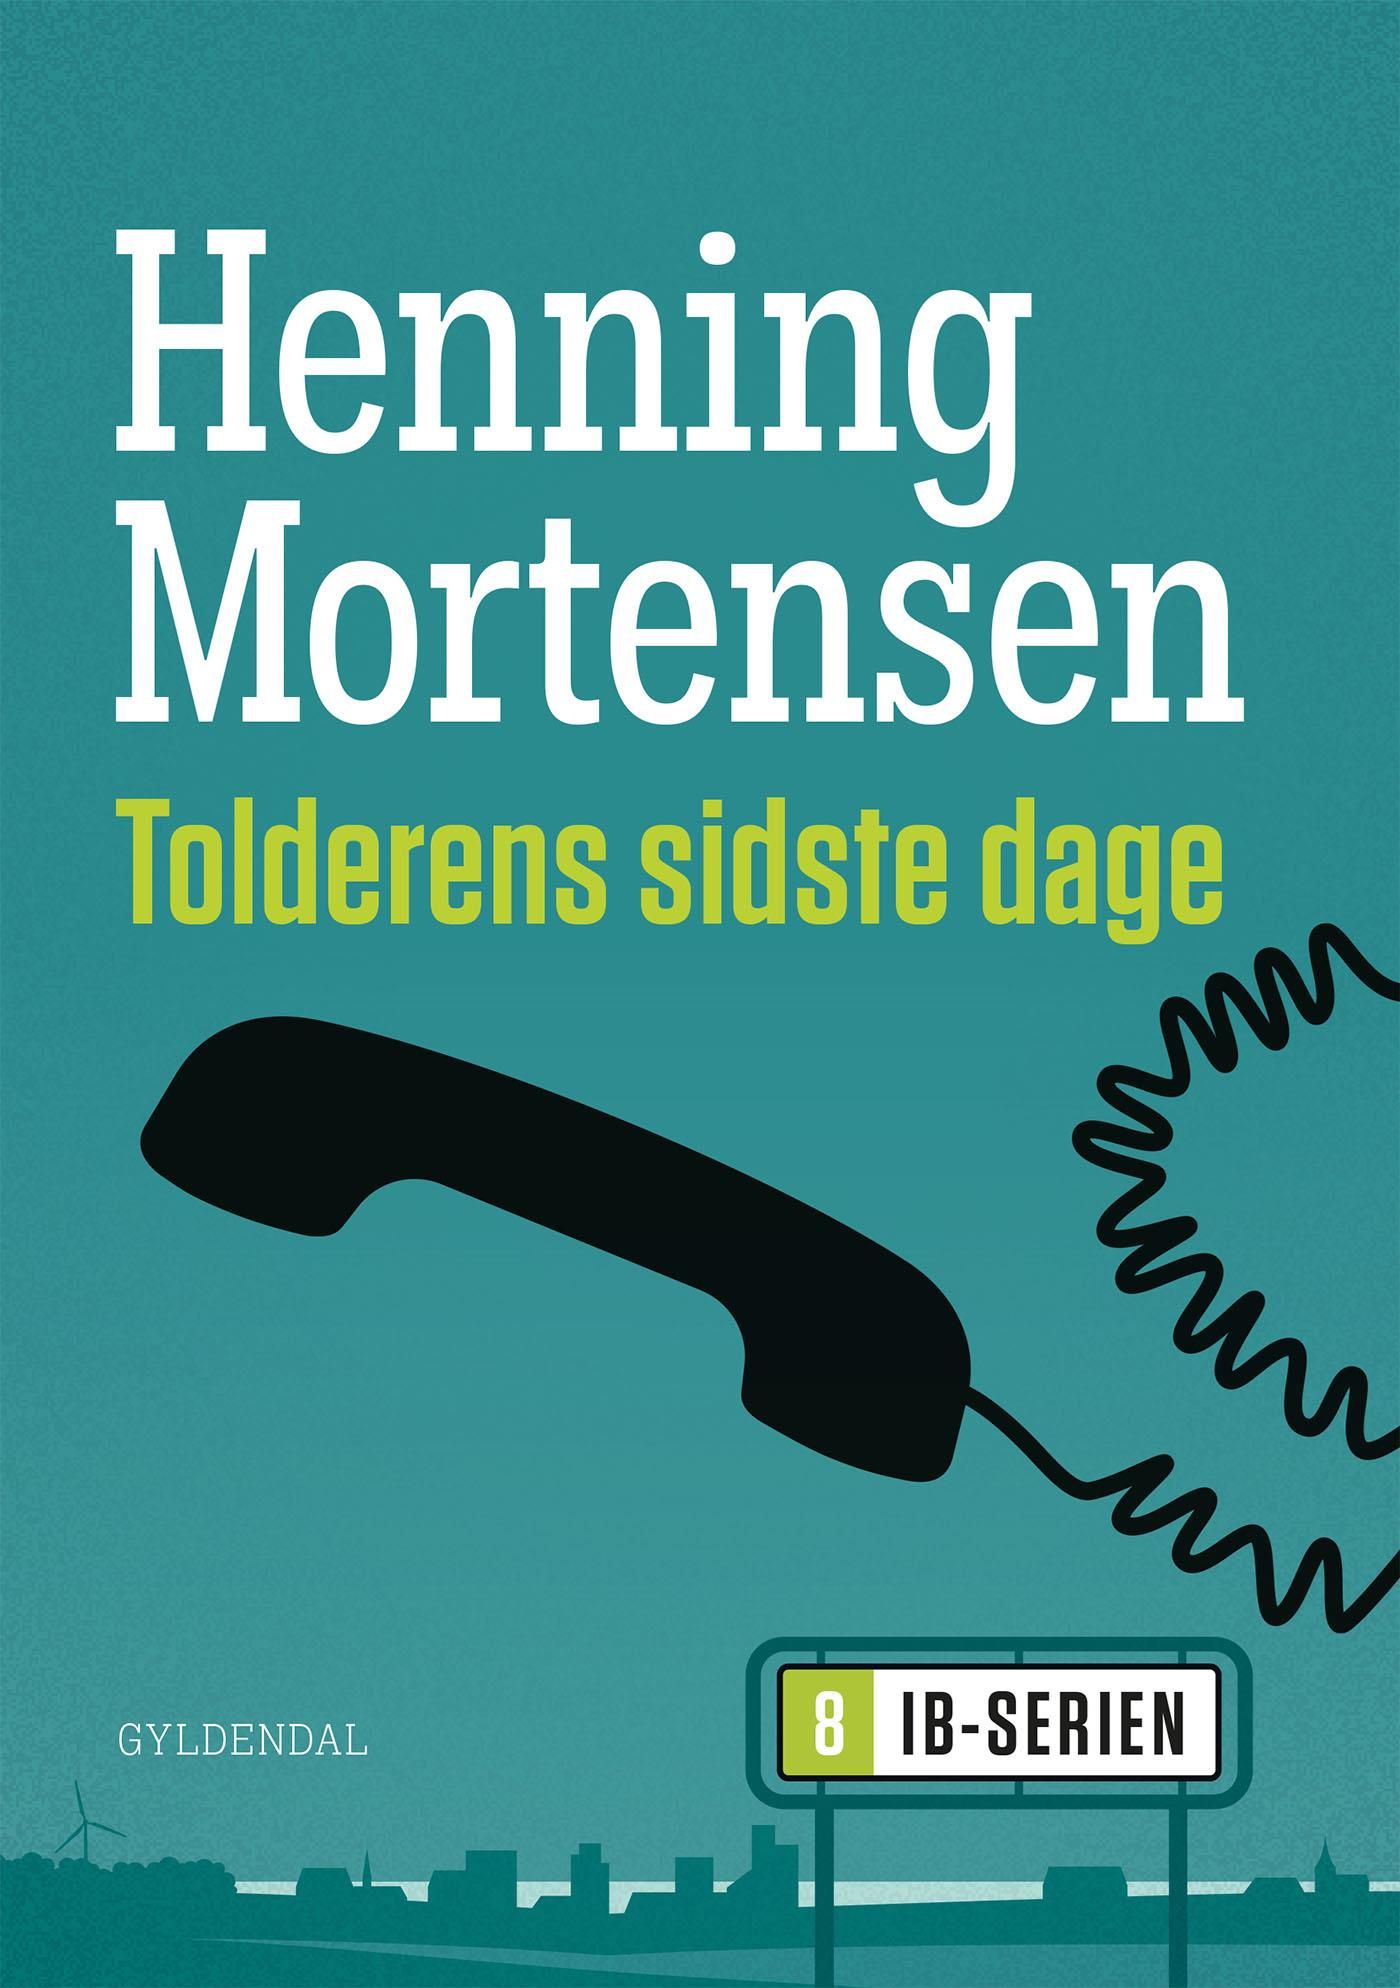 Tolderens sidste dage, e-bog af Henning Mortensen